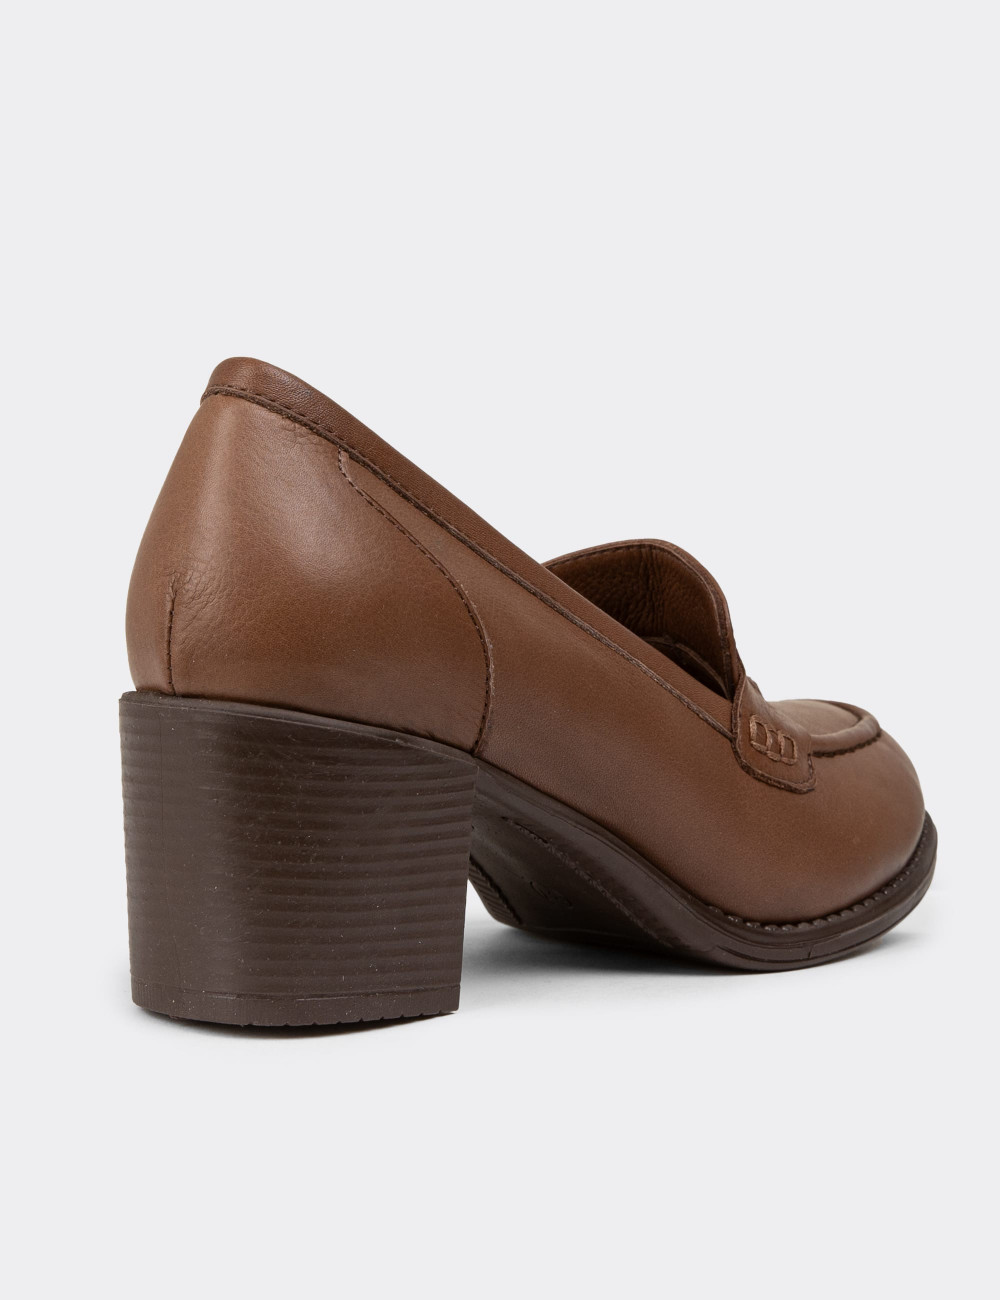 Hakiki Deri Taba Rengi Kadın Topuklu Günlük Ayakkabı - A7075ZTBAC01